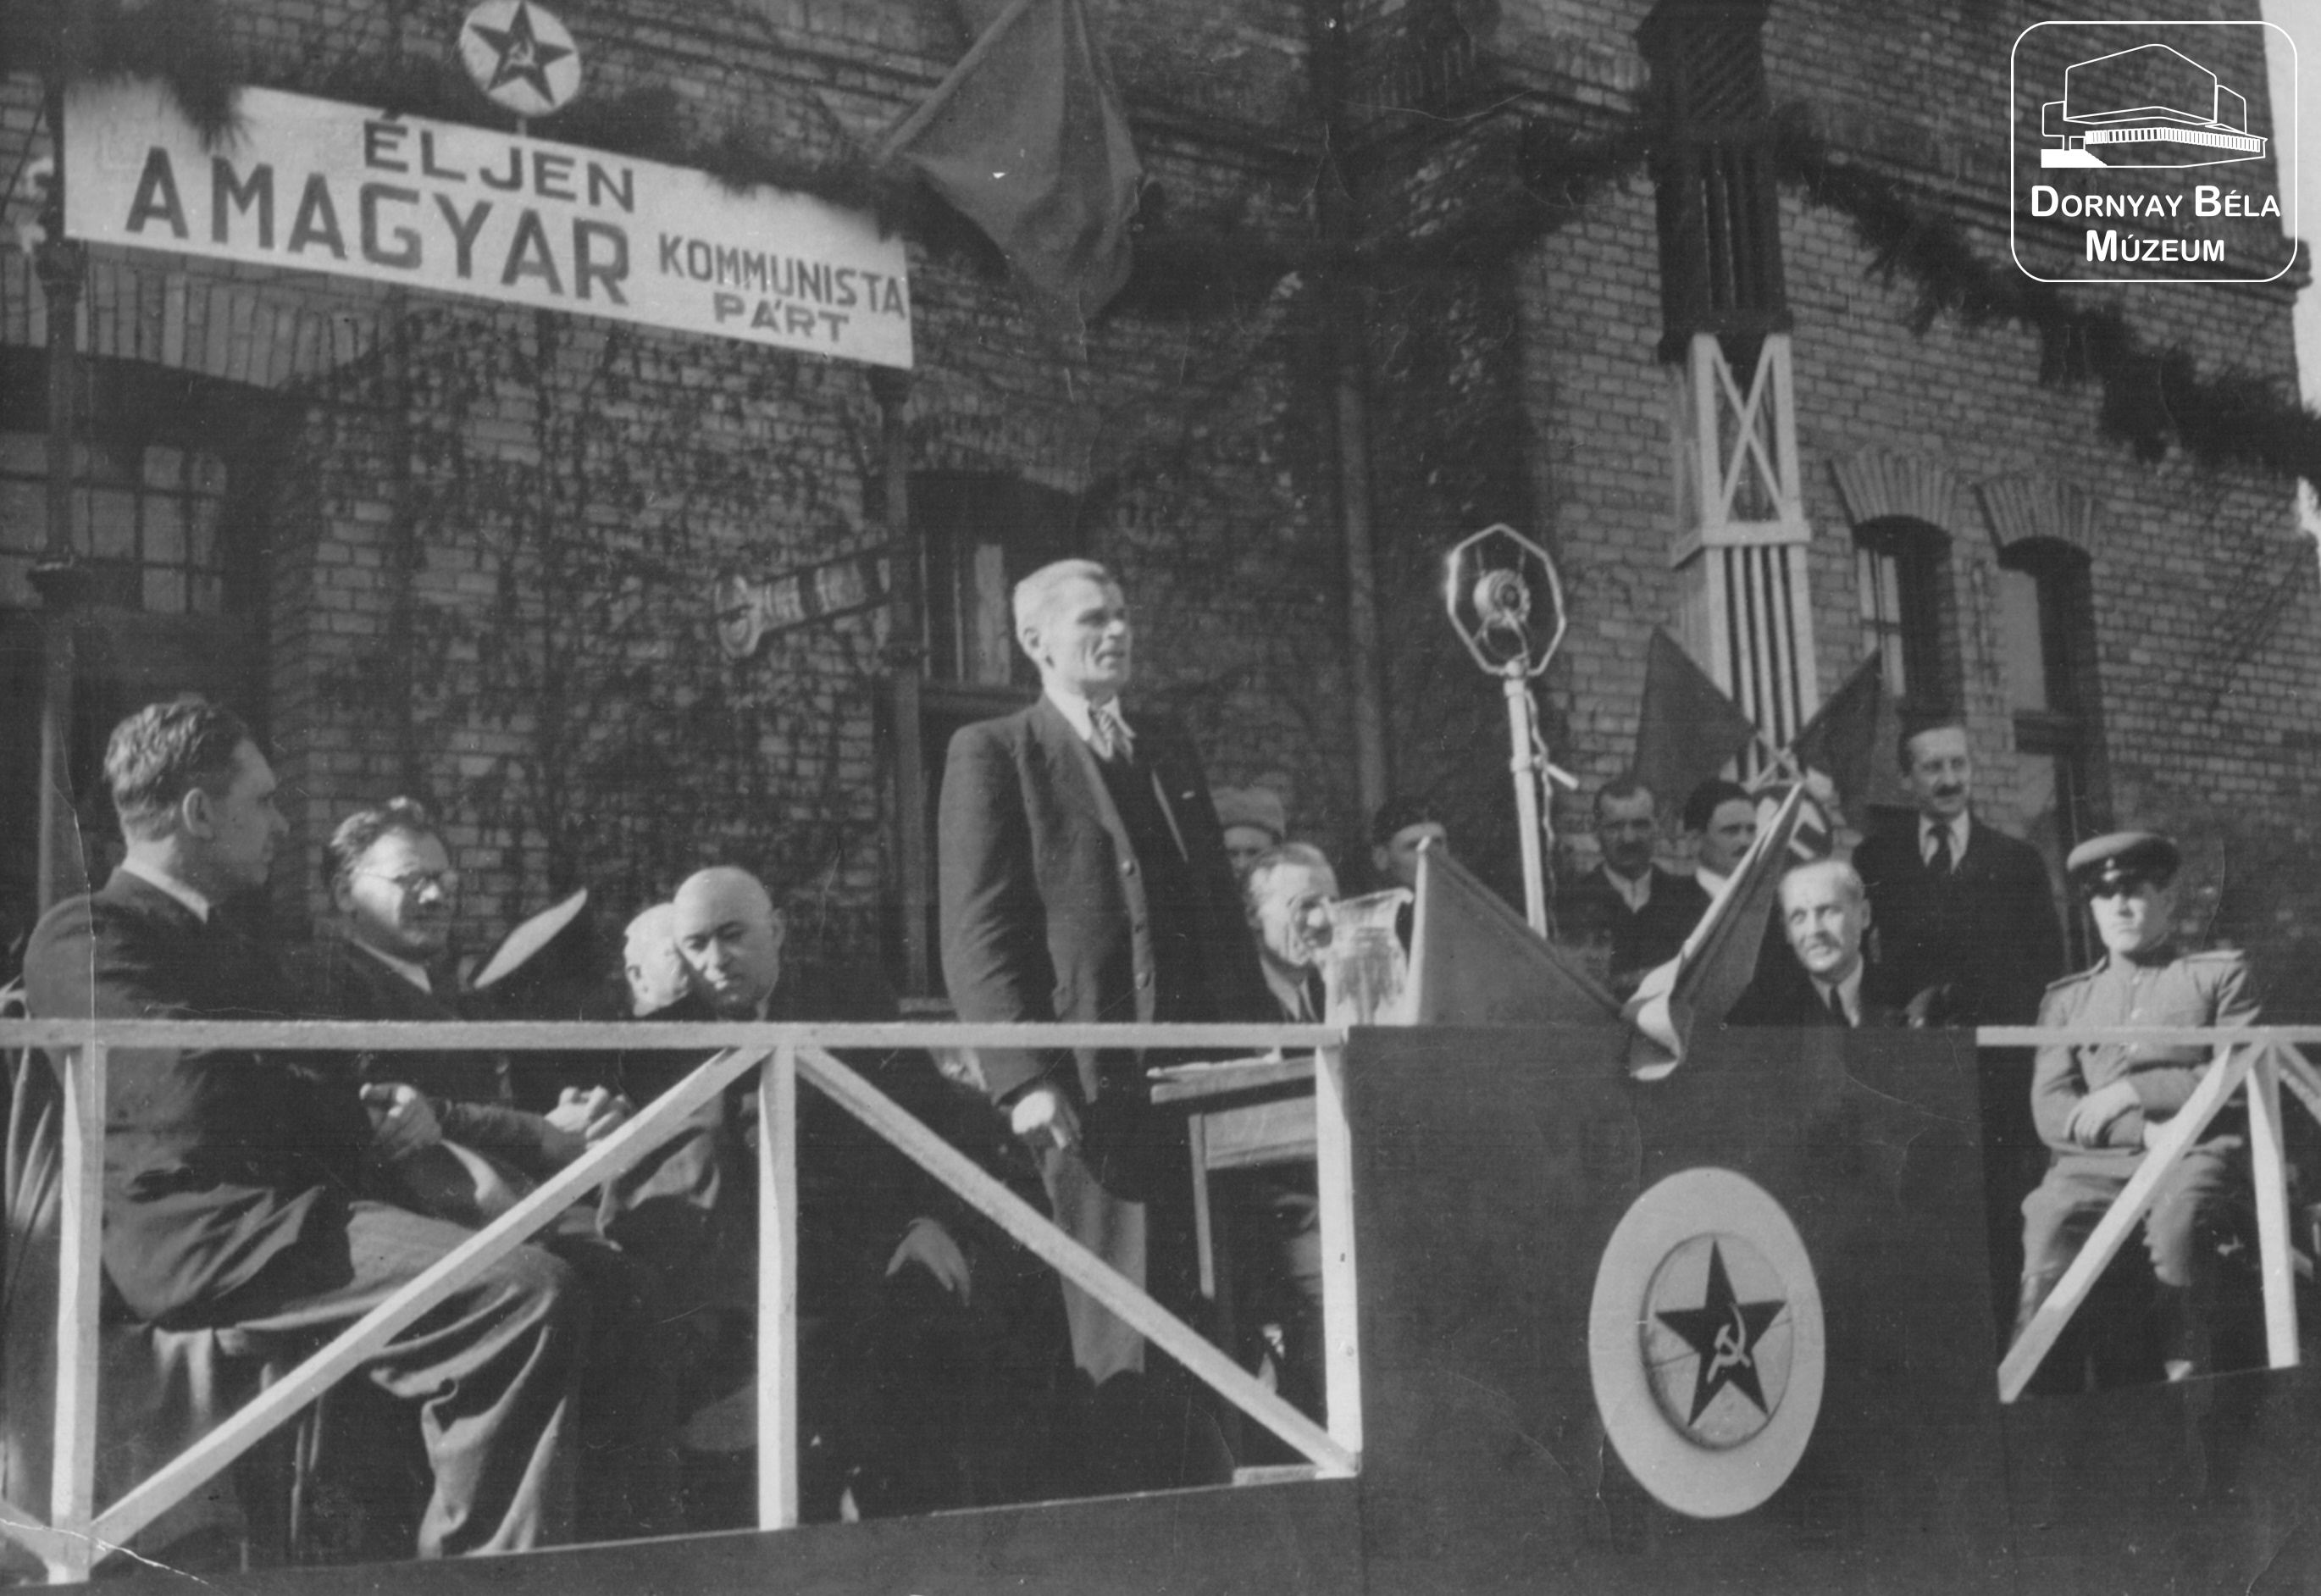 A Magyar Kommunista Párt 1945. márc. 25-i nagygyűlése Salgótarjánban. A szónoktól balra Rákosi Mátyás ül. (Dornyay Béla Múzeum, Salgótarján CC BY-NC-SA)